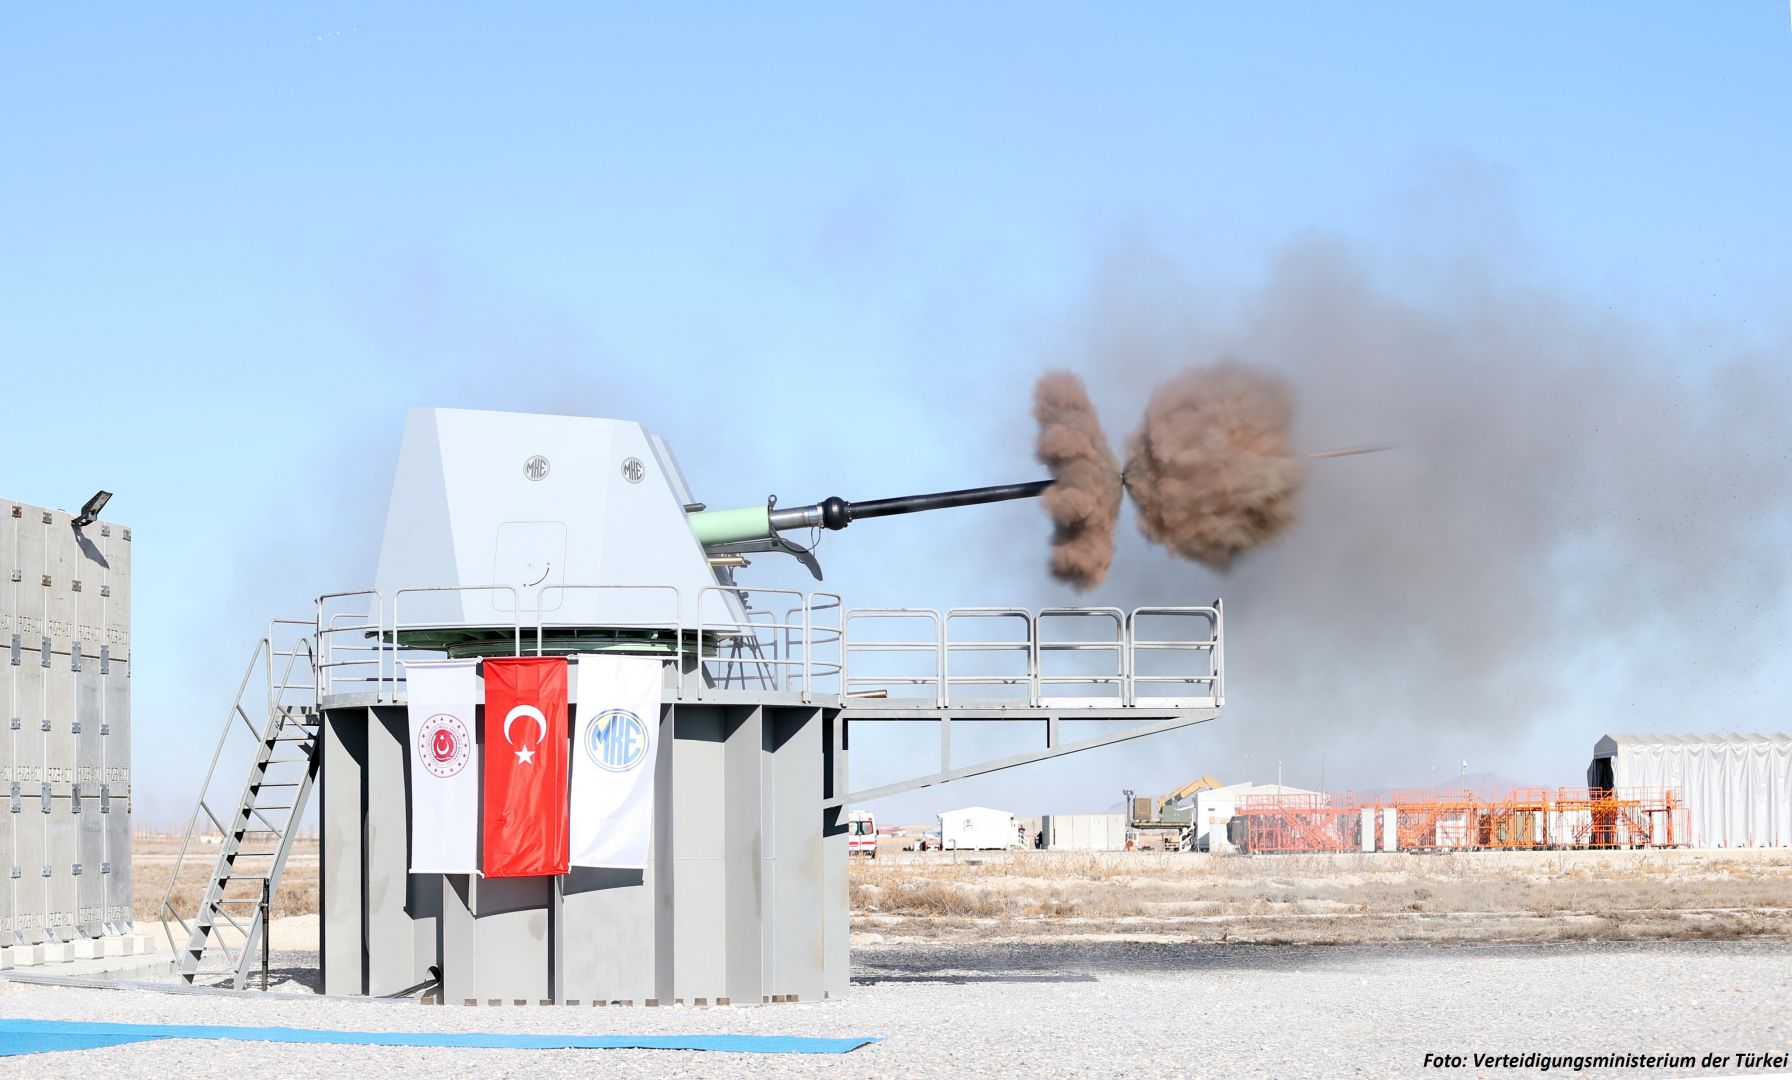 Türkiye übergab den georgischen Verteidigungskräften verschiedene Arten von Ausrüstung